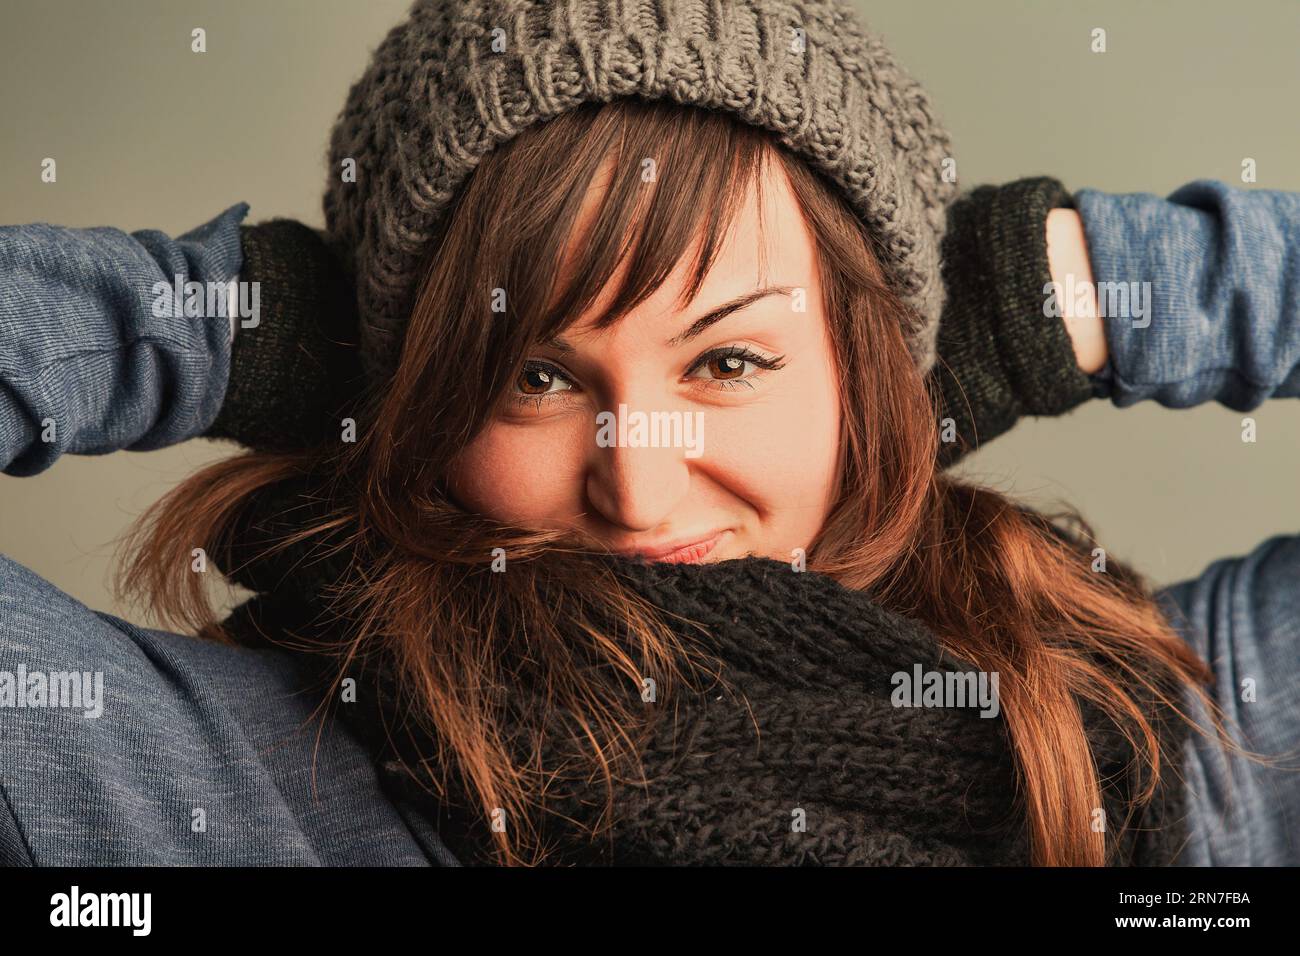 femme avec les yeux chatoyants et les cheveux bruns fluides est réconforté et élégant dans ses vêtements d'hiver, patché dans des lainages Banque D'Images